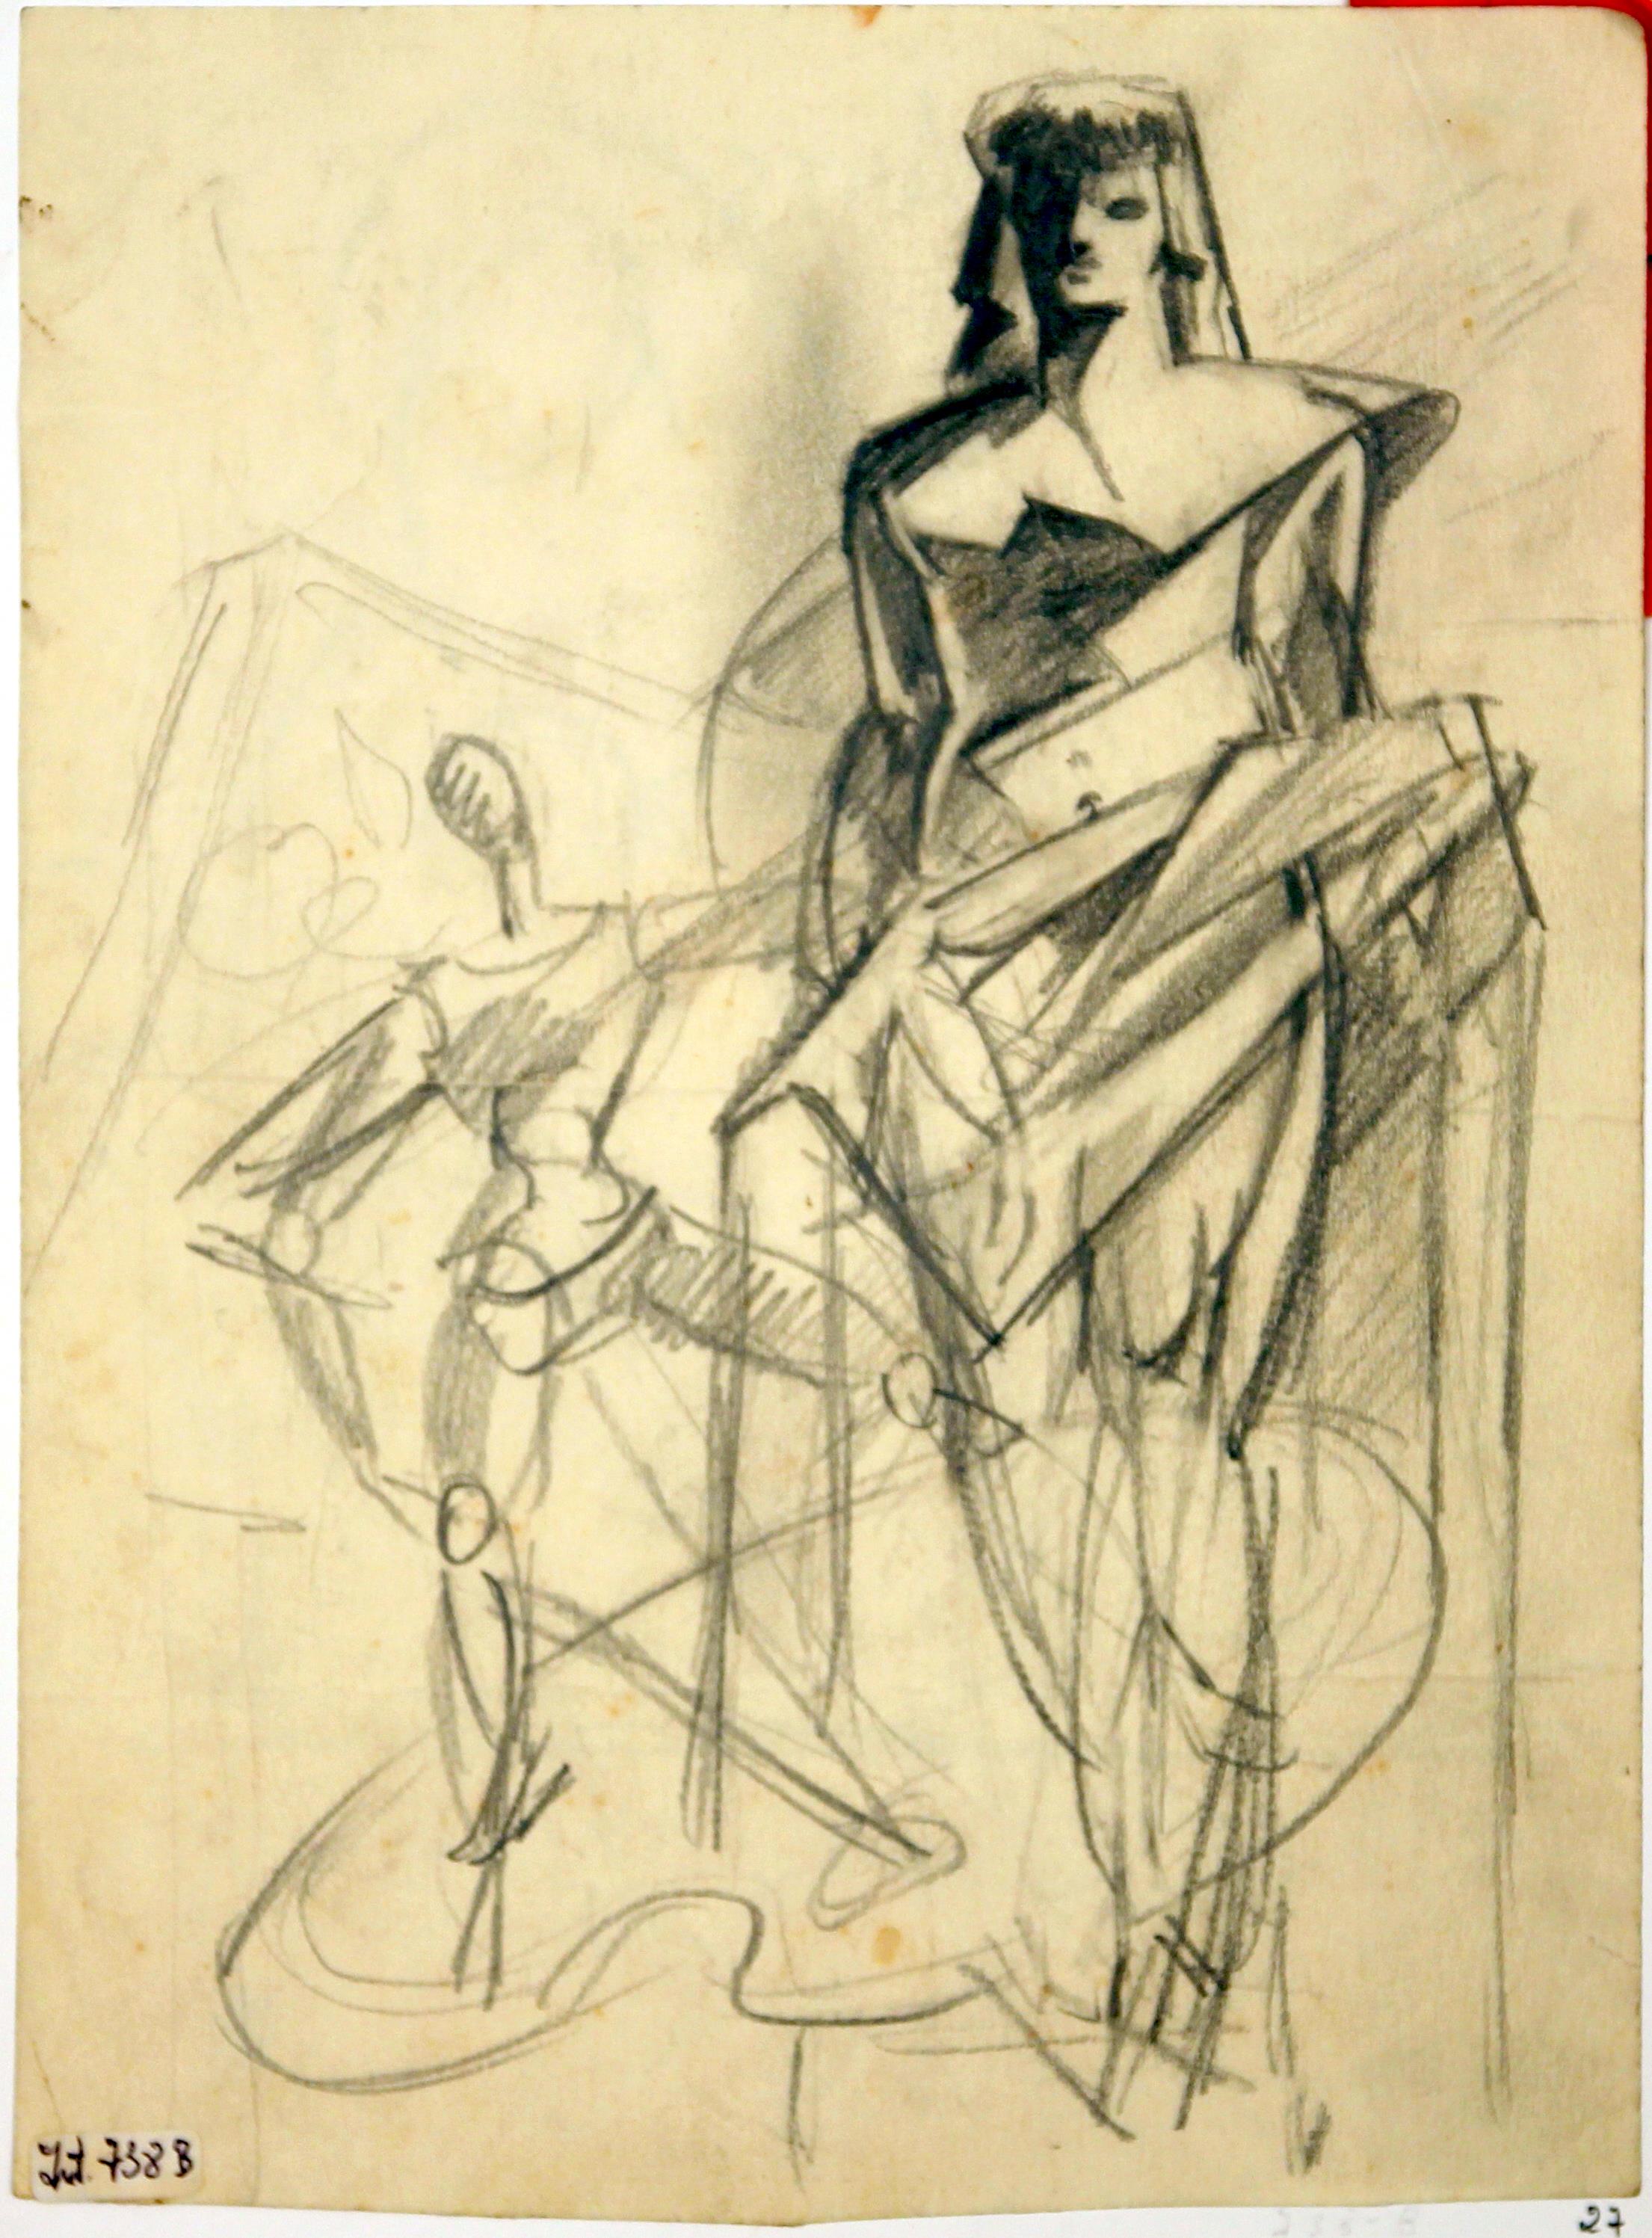 [II Exposição de Artes Plásticas : Fundação Calouste Gulbenkian : Dezembro 1961 : Pavilhão FIL : estudo]